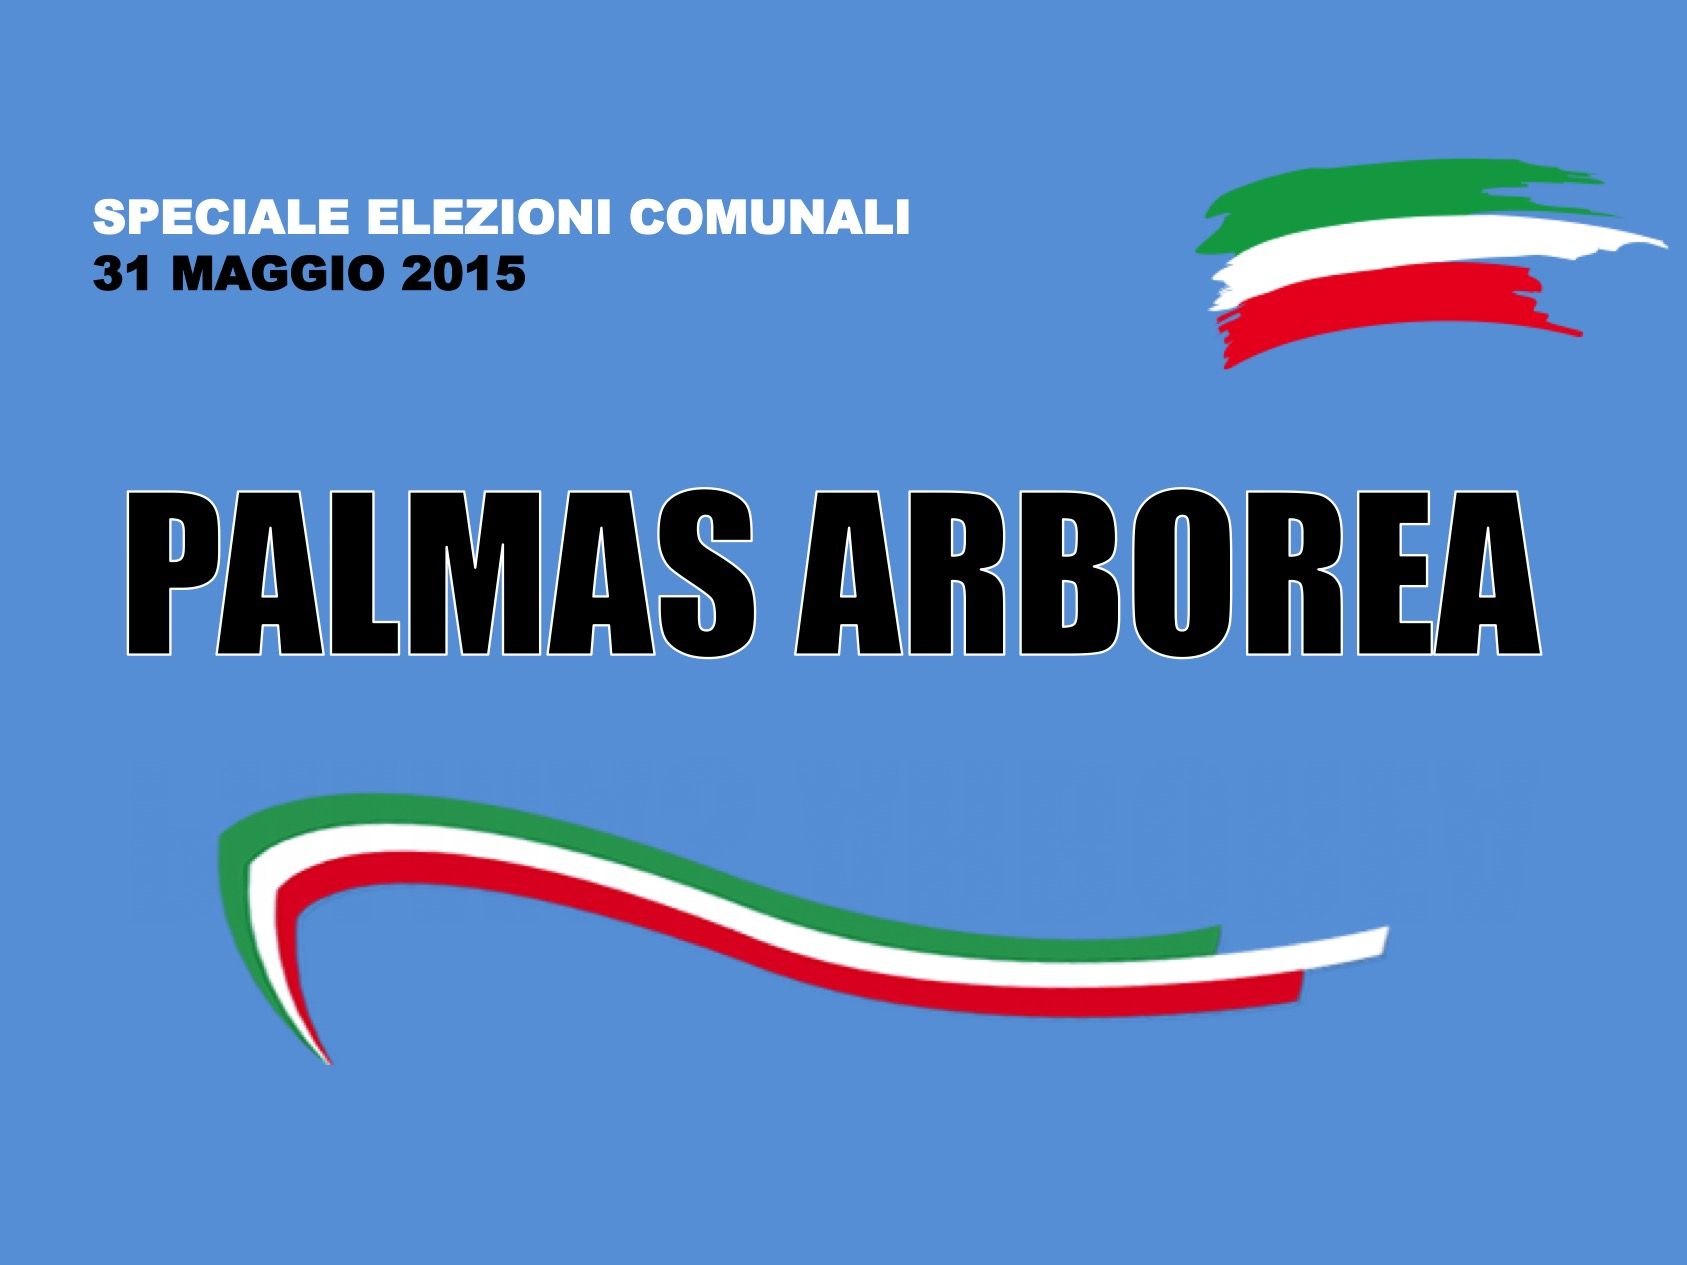 Palmas Arborea. Elezioni Comunali 31 maggio 2015. I risultati delle votazioni